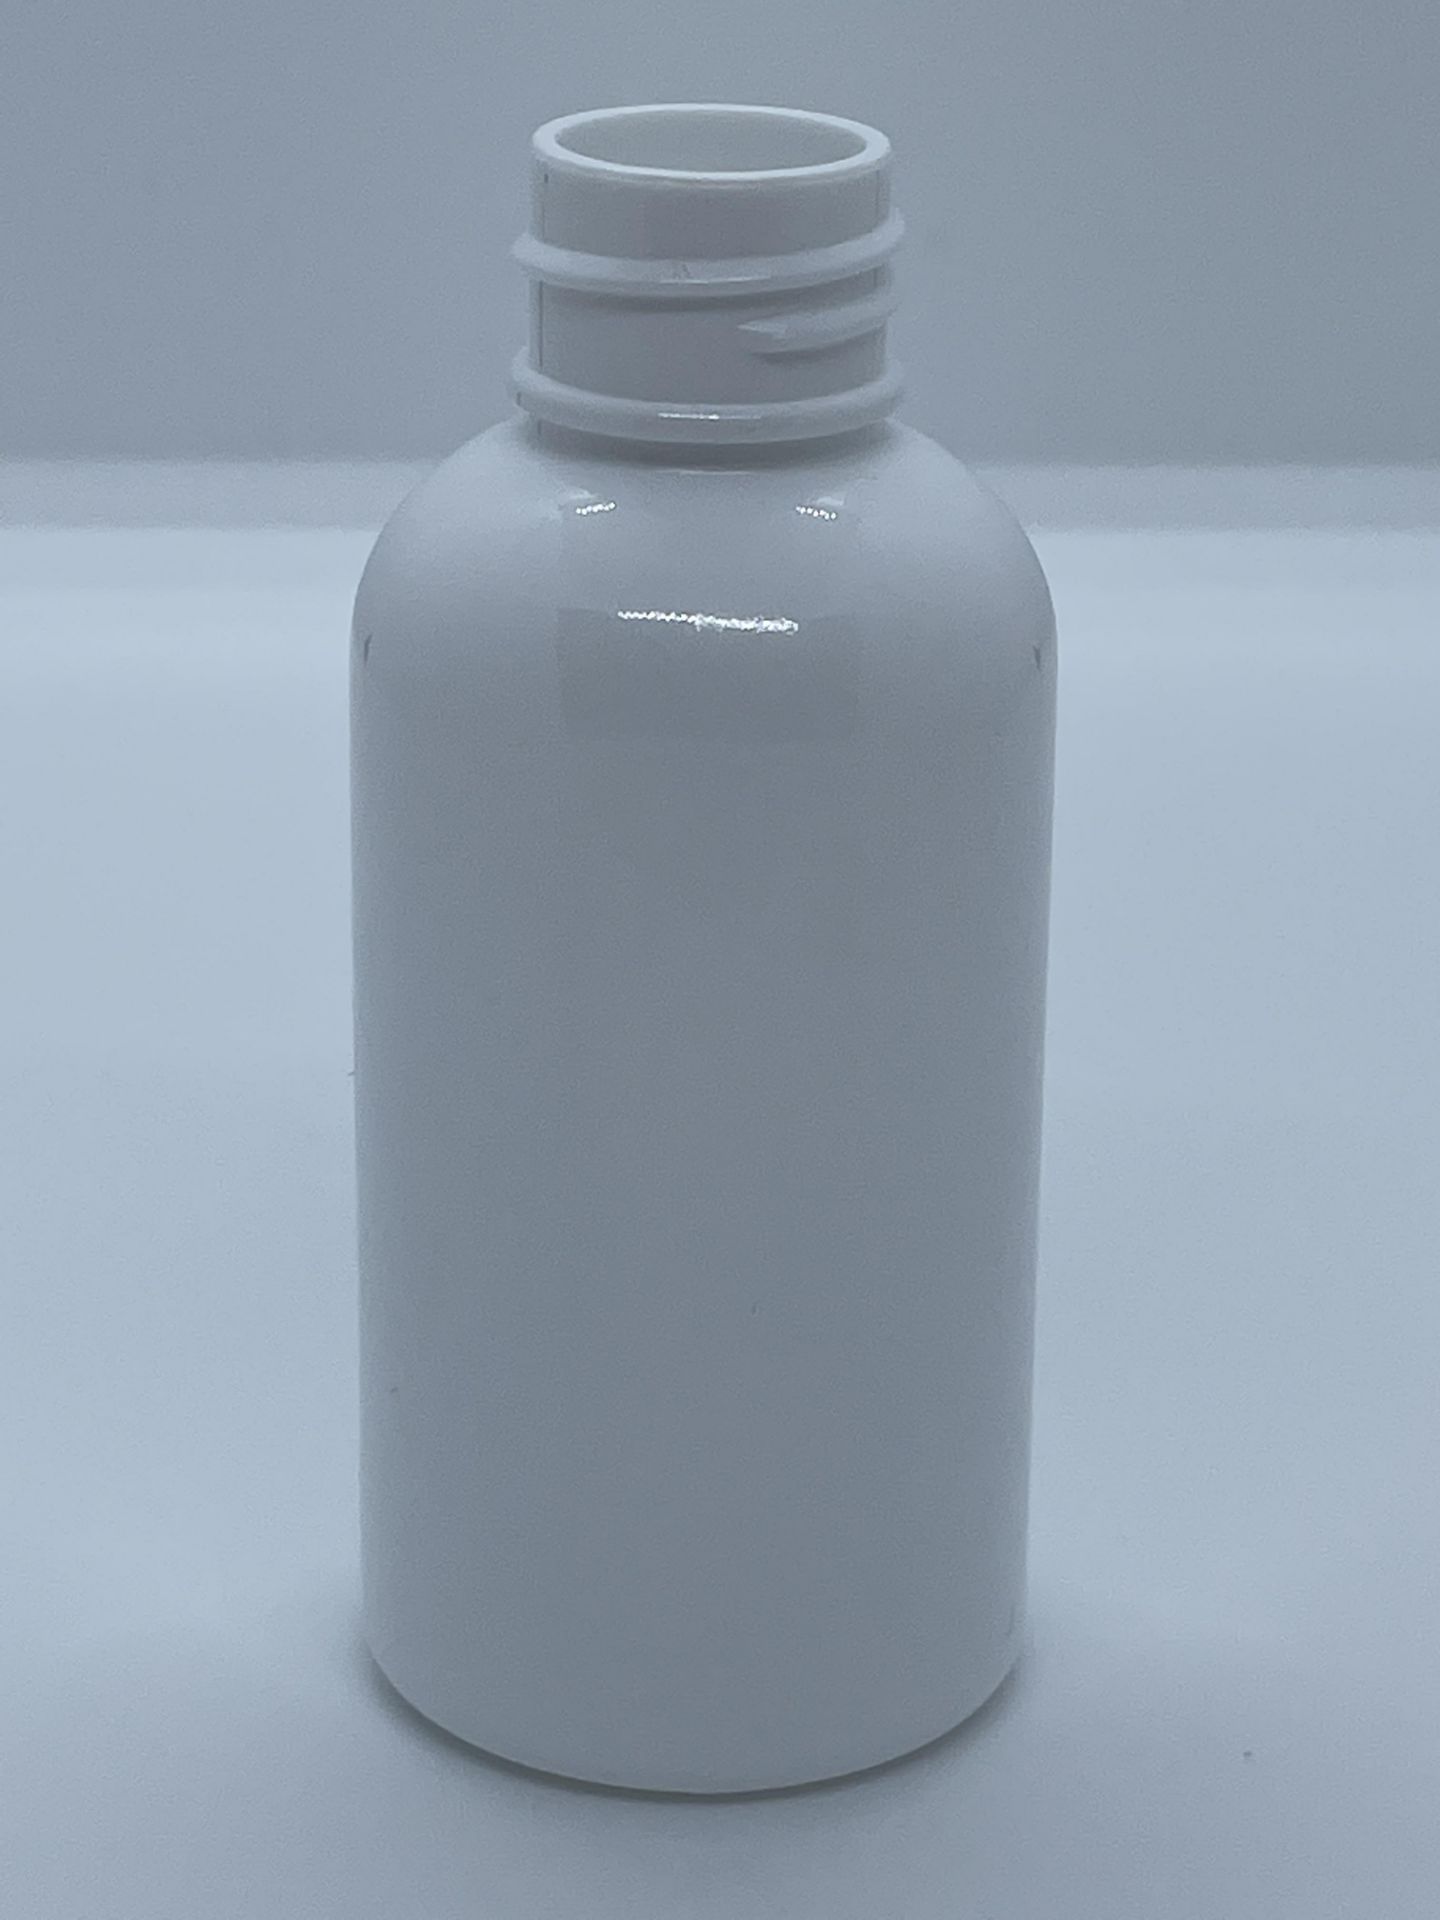 32,000 - White Plastic Bullet 2 oz Empty Bottles, 20-410 Threading Neck, 3.25" Tall, 1.25" Diameter - Image 4 of 8